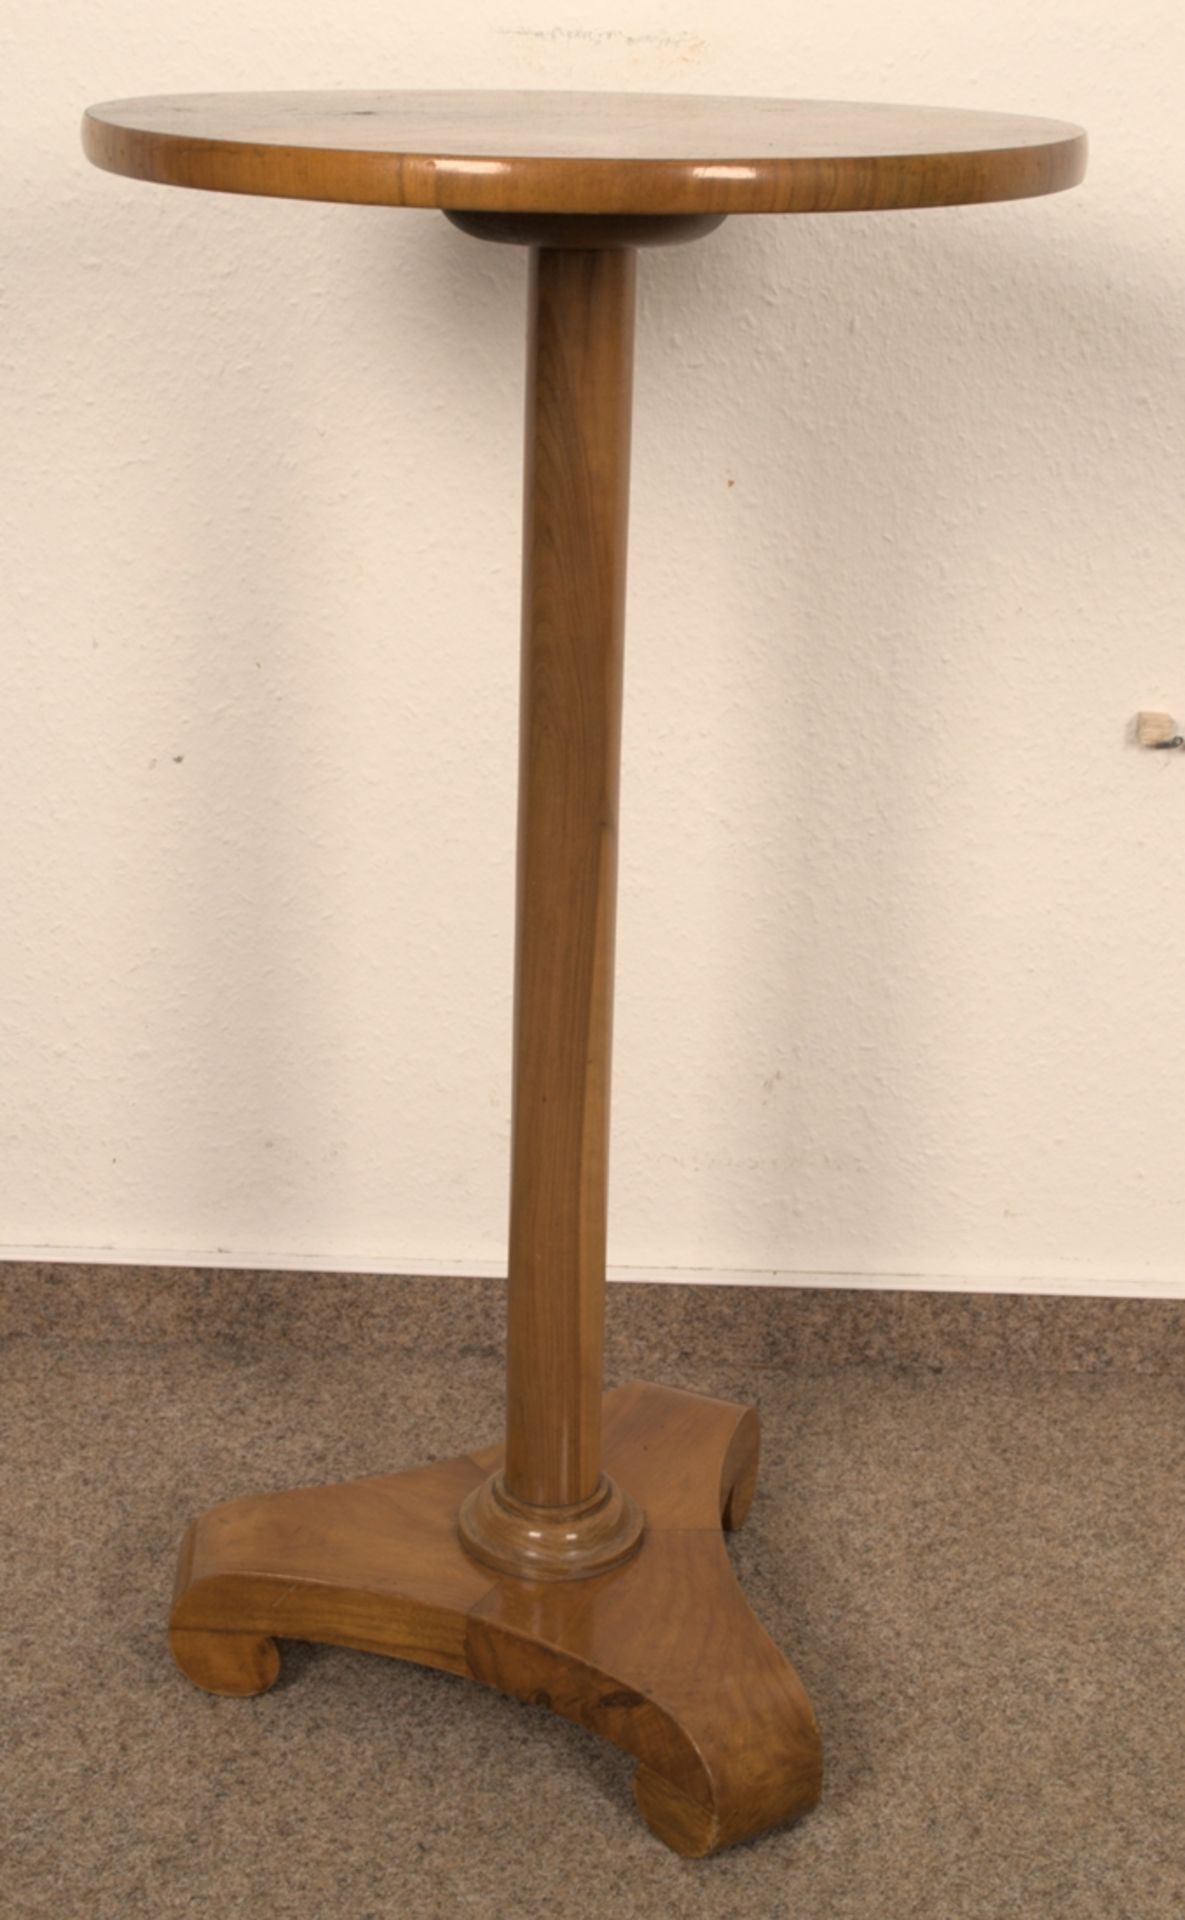 Rundes Lampentischchen, Biedermeier-Stil 19./20. Jhd., Höhe ca. 75 cm, Durchmesser ca. 42 cm. - Image 2 of 5